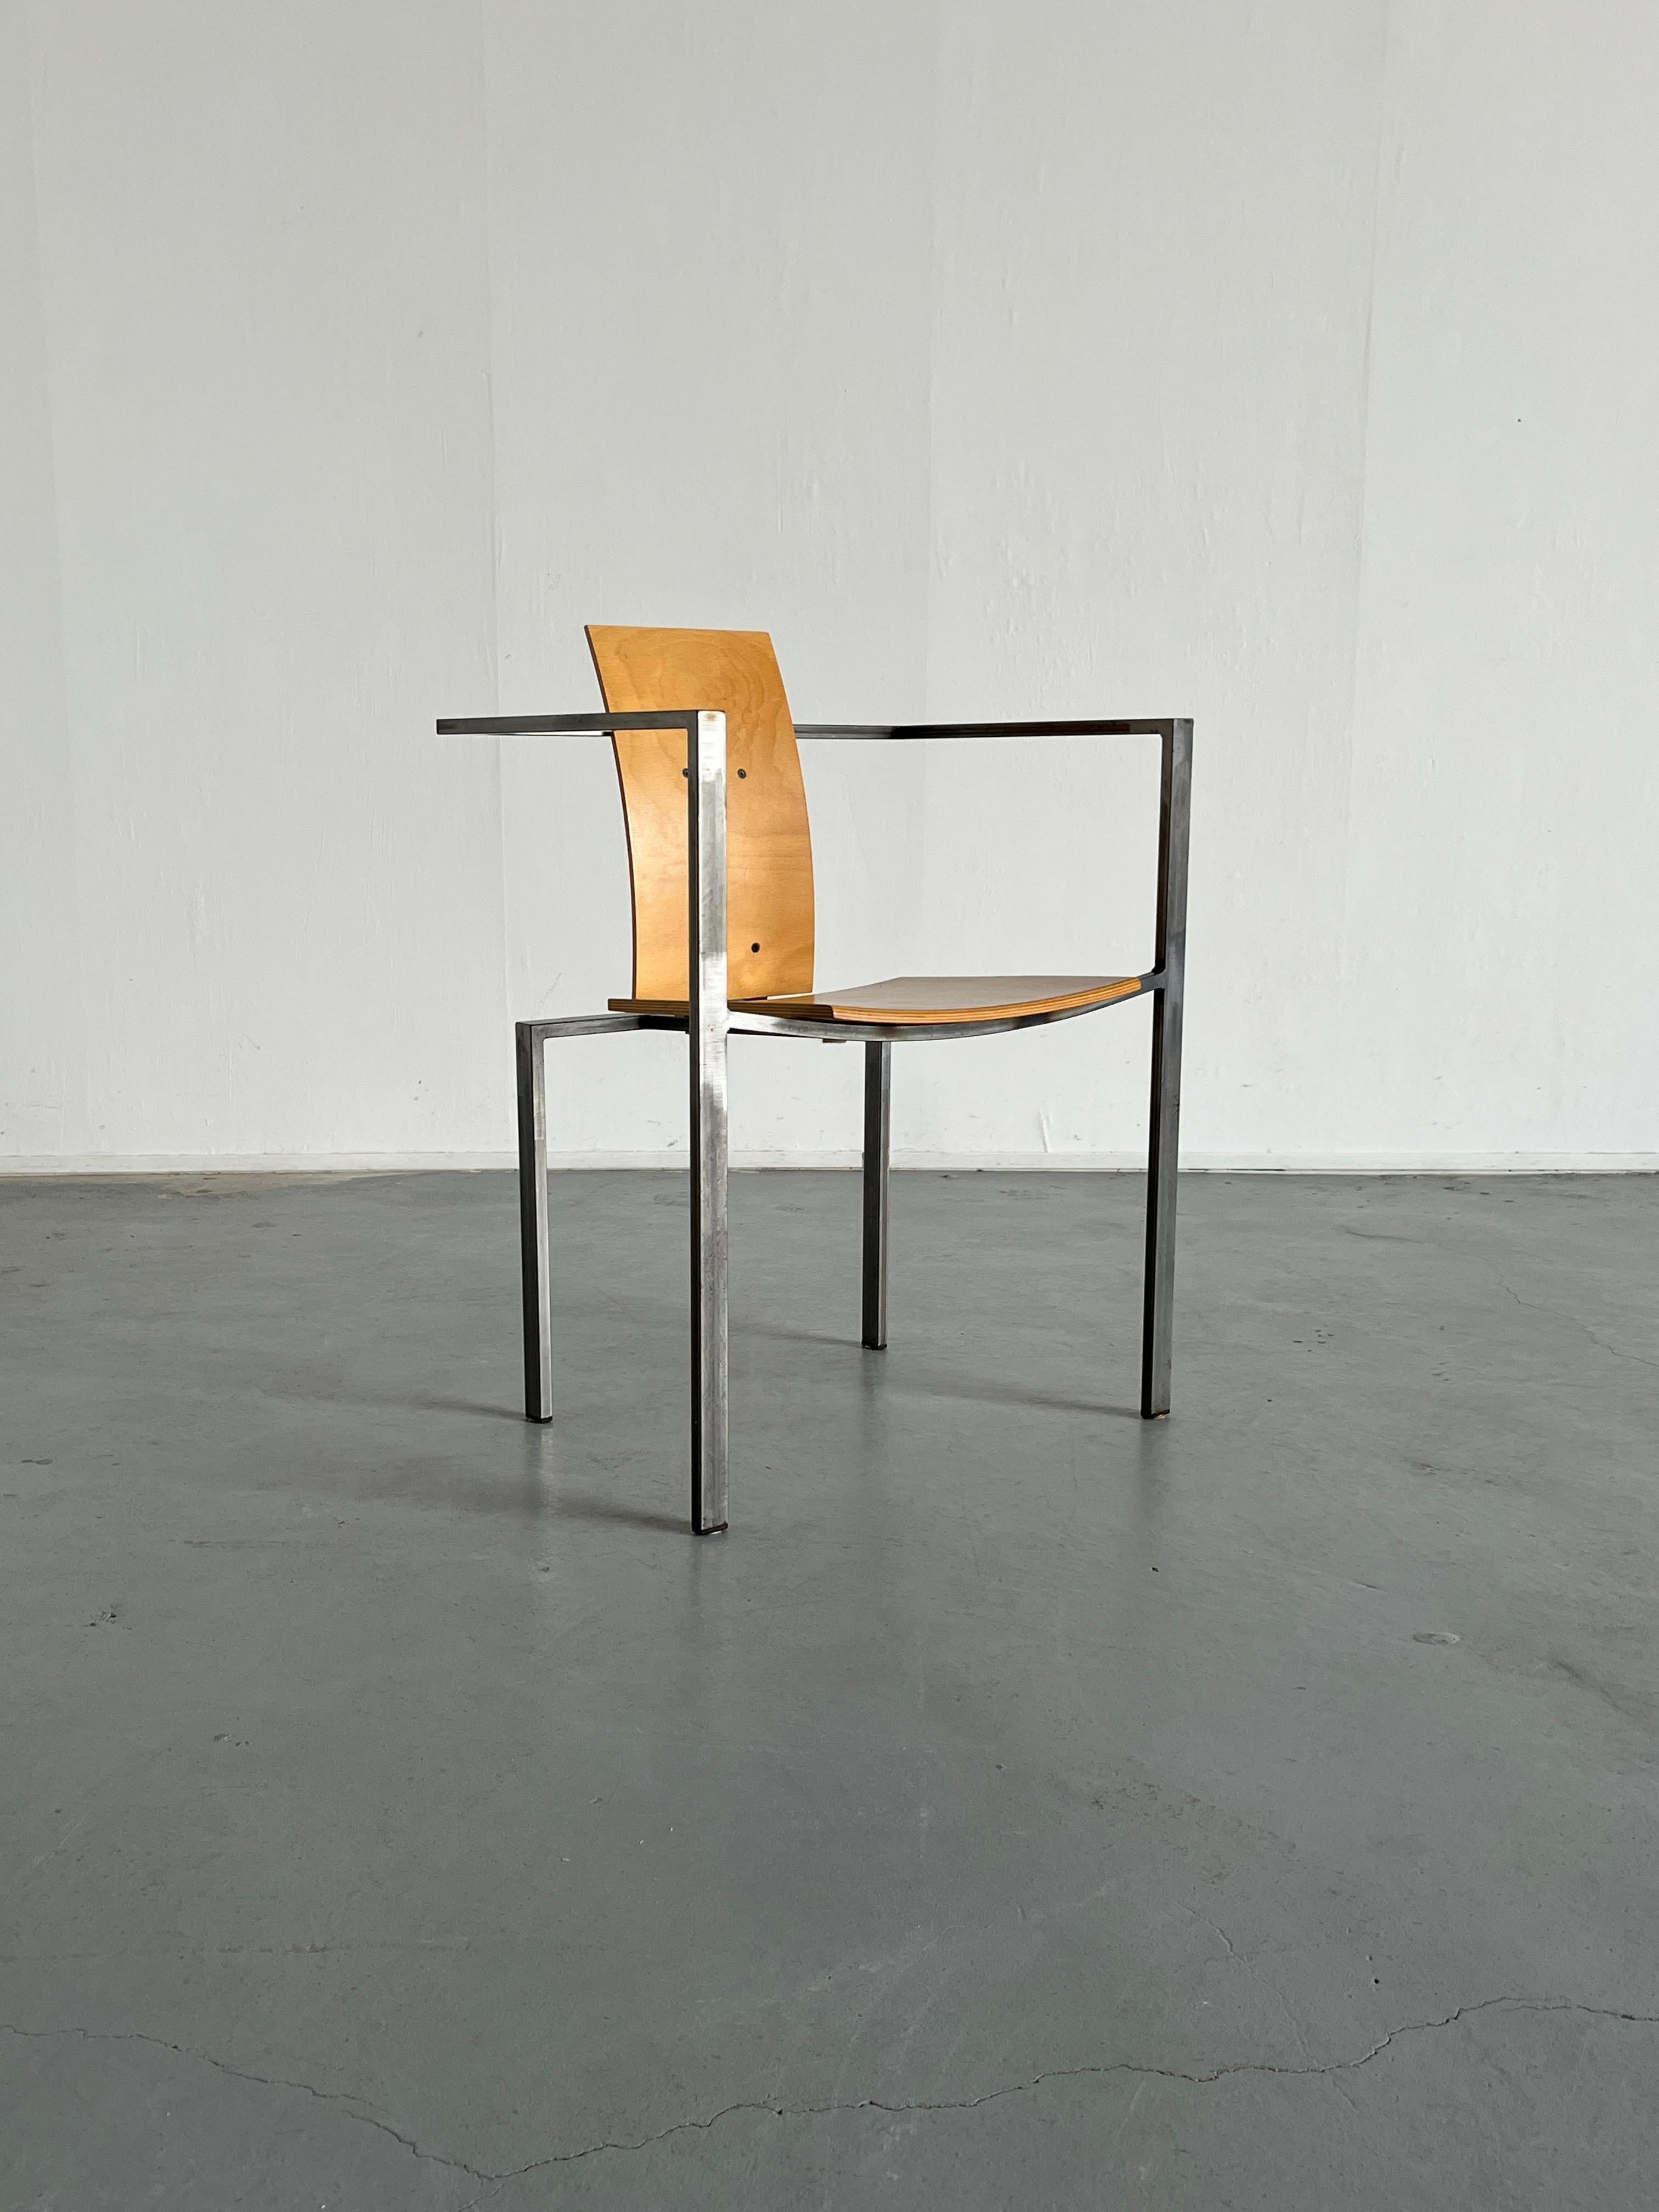 Chaise postmoderne en acier et en contreplaqué conçue dans les années 1980 en Allemagne par Karl Friedrich Förste pour KFF, sa propre entreprise de fabrication. 
Design unique, géométrique et influencé par Memphis, dans une production de style